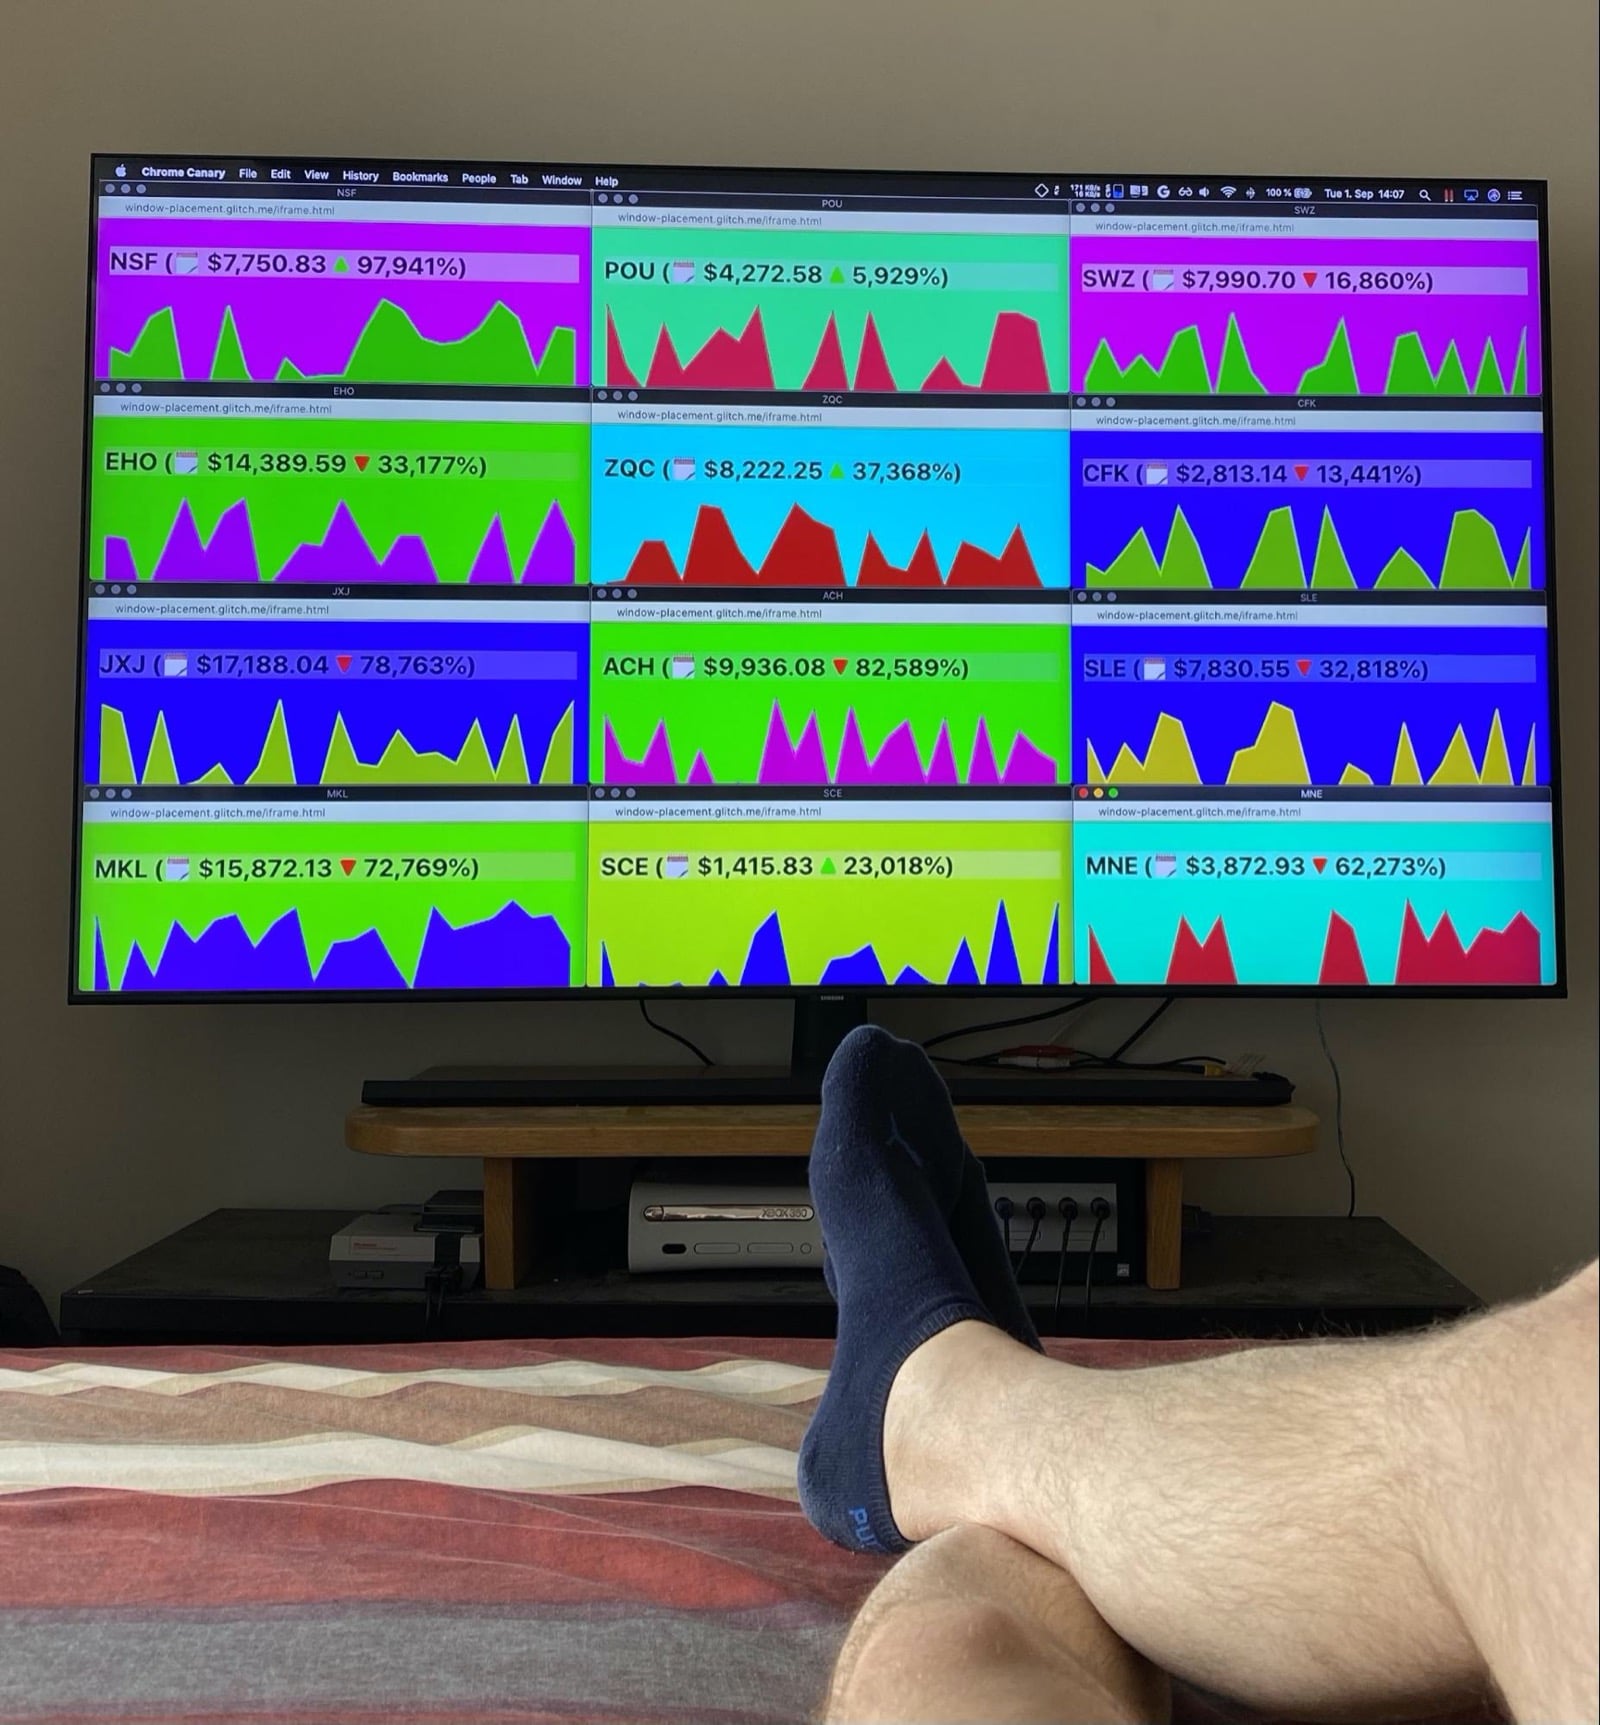 Groot tv-scherm aan het voeteneinde van een bed, waarbij de benen van de auteur gedeeltelijk zichtbaar zijn. Op het scherm een ​​nep-crypto-valutahandel.